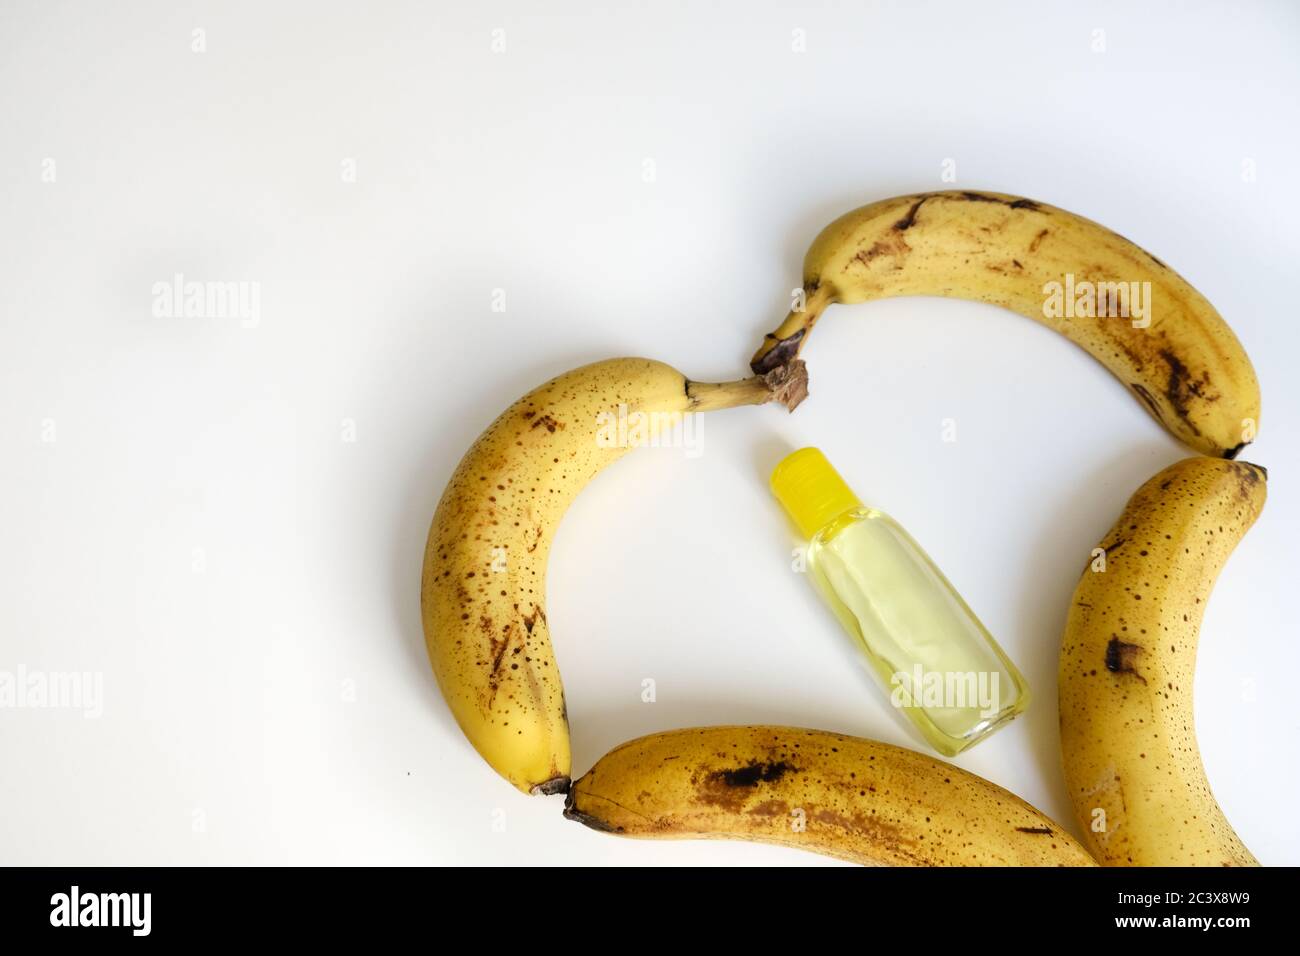 Bananes en forme de cœur trop mûres sur une table blanche. Désinfectant pour les mains jaune au milieu. Concept d'auto-soins et de protection du coronavirus. Une alimentation saine Banque D'Images